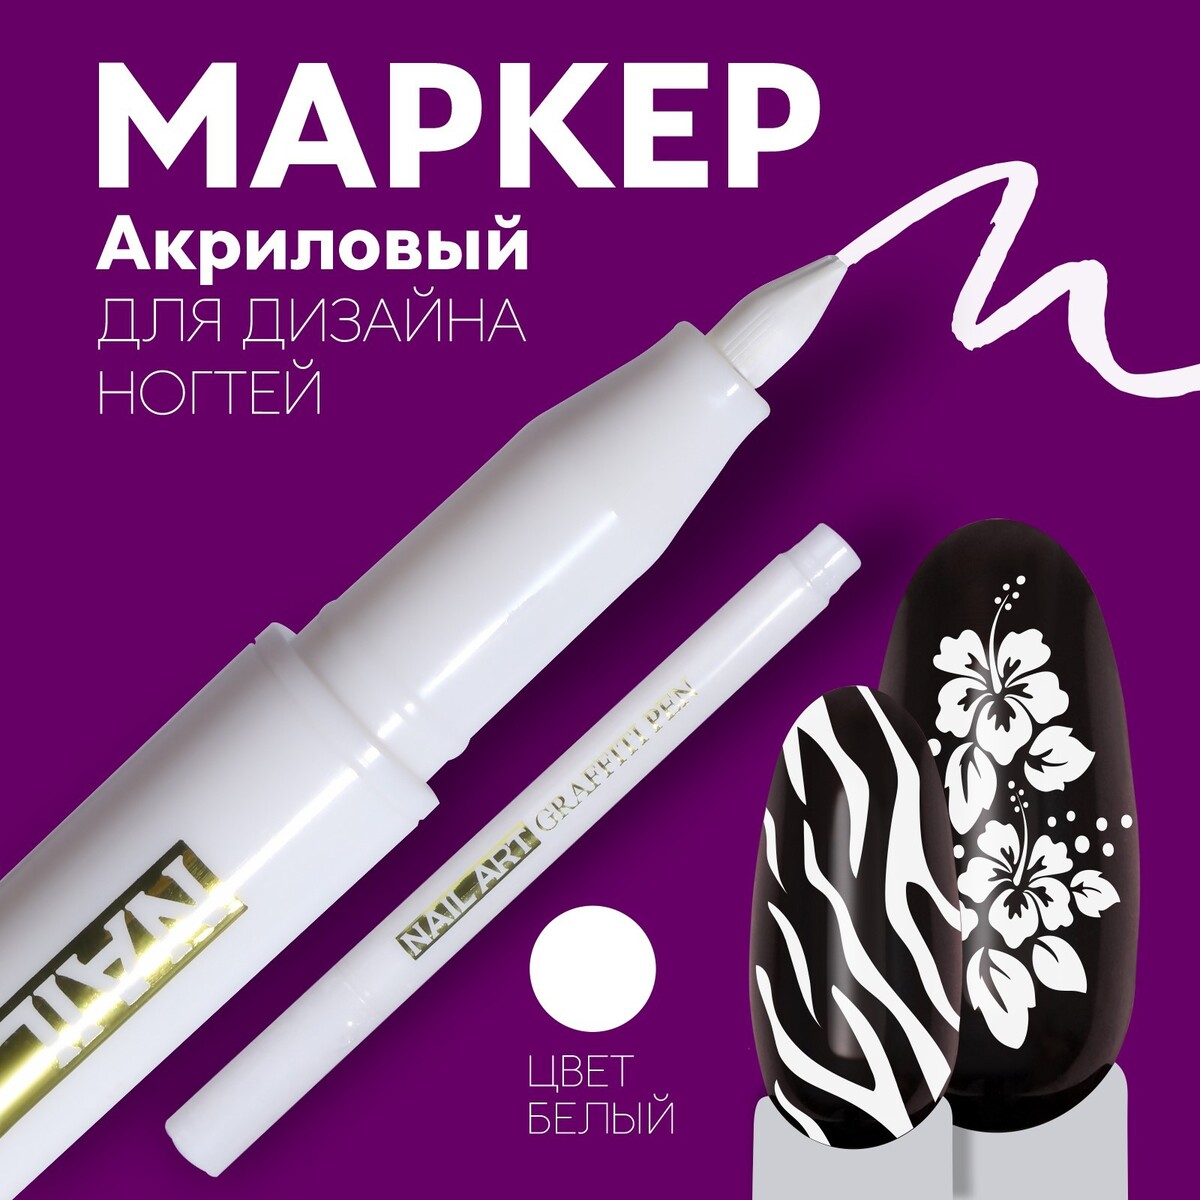 Маркер для дизайна ногтей, акриловый, 13,5 см, цвет белый маркер акриловый сонет 2мм серебро сонет